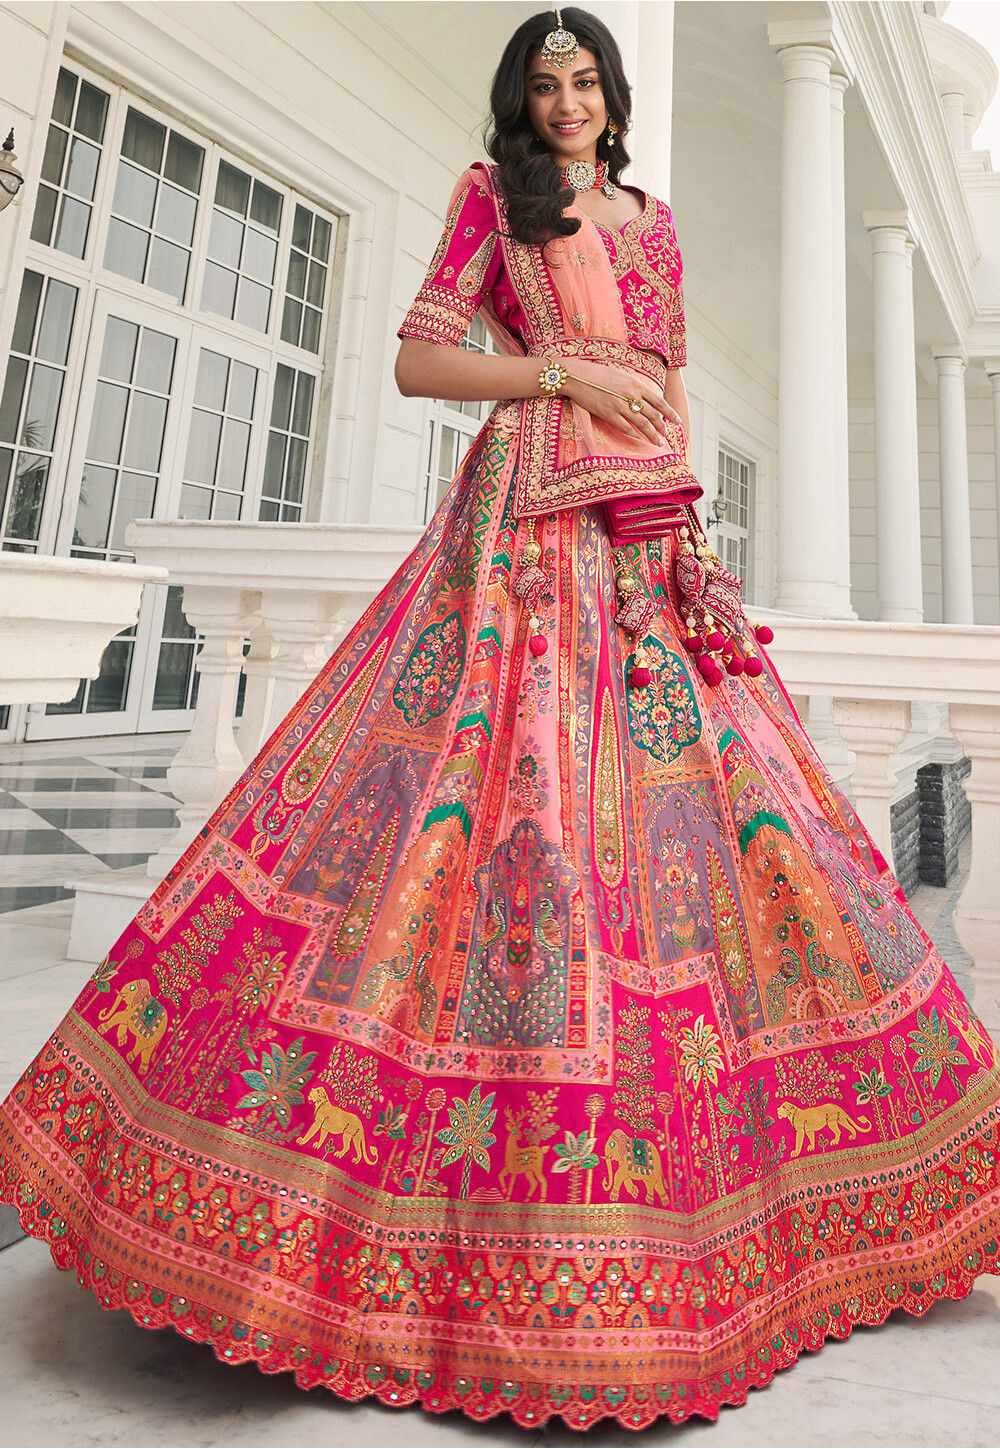 Pretty Peach Colored Designer Lehenga Choli, Shop wedding lehenga choli  online